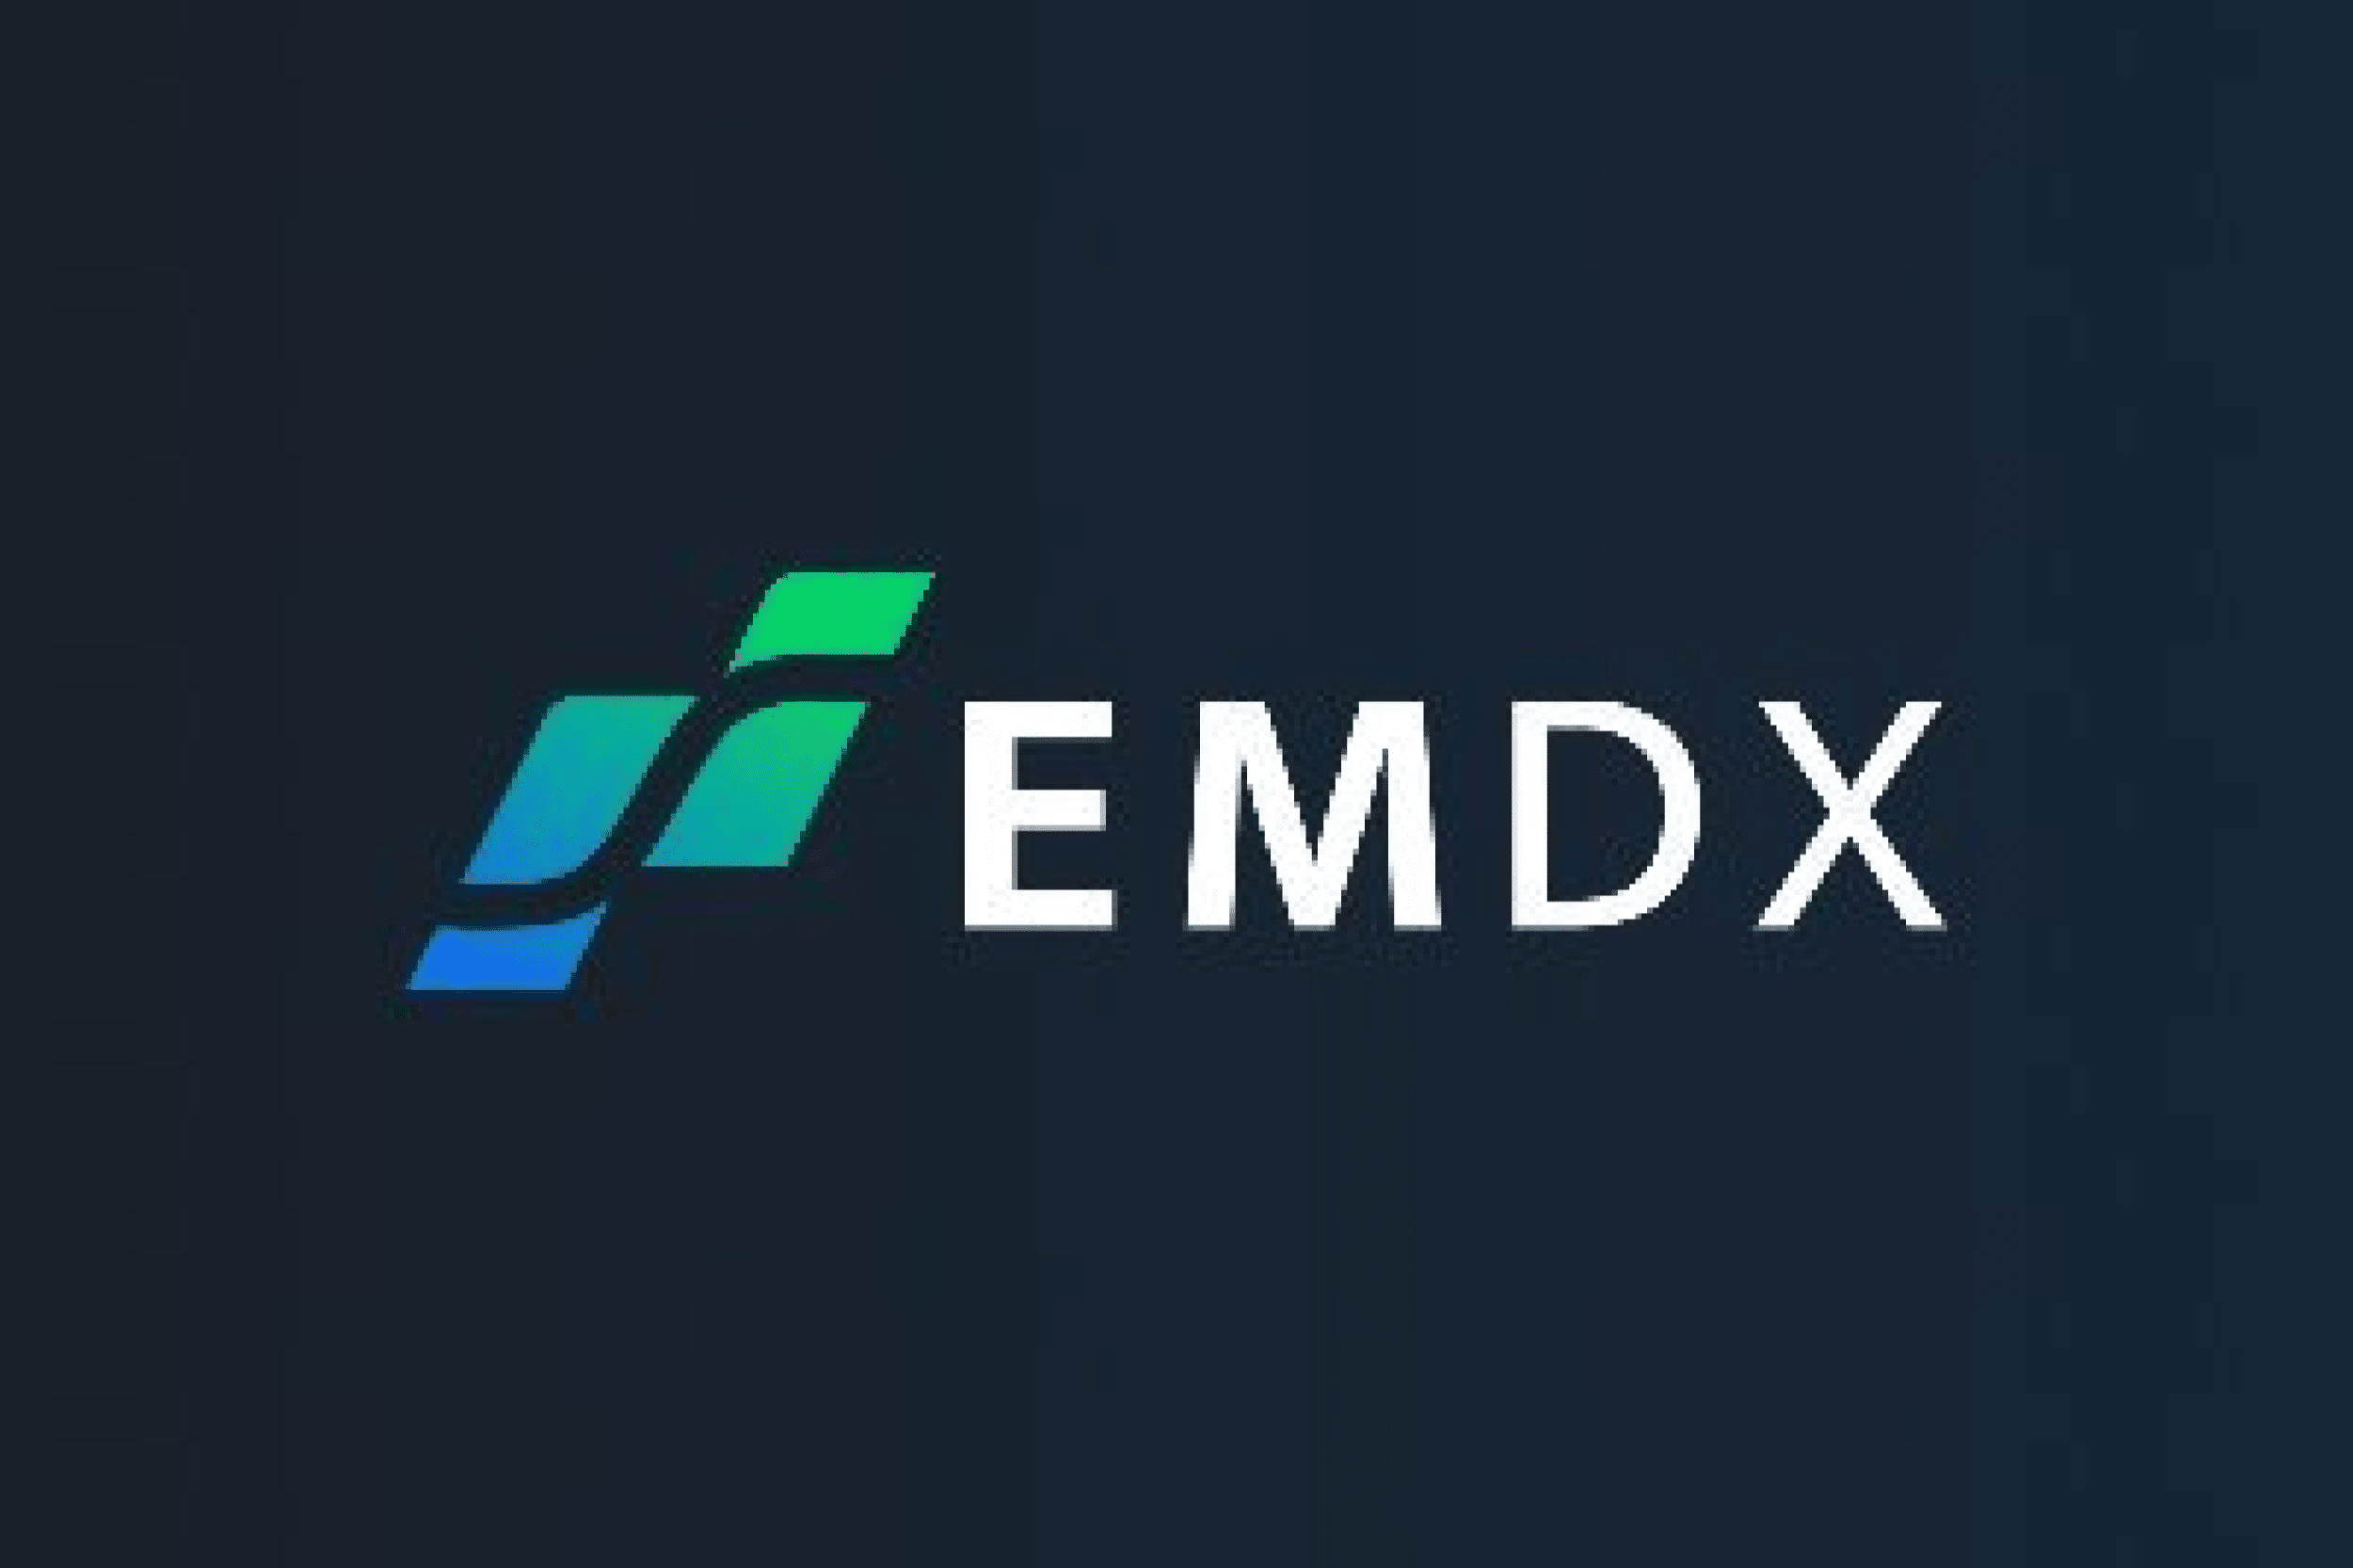 EMDX Token